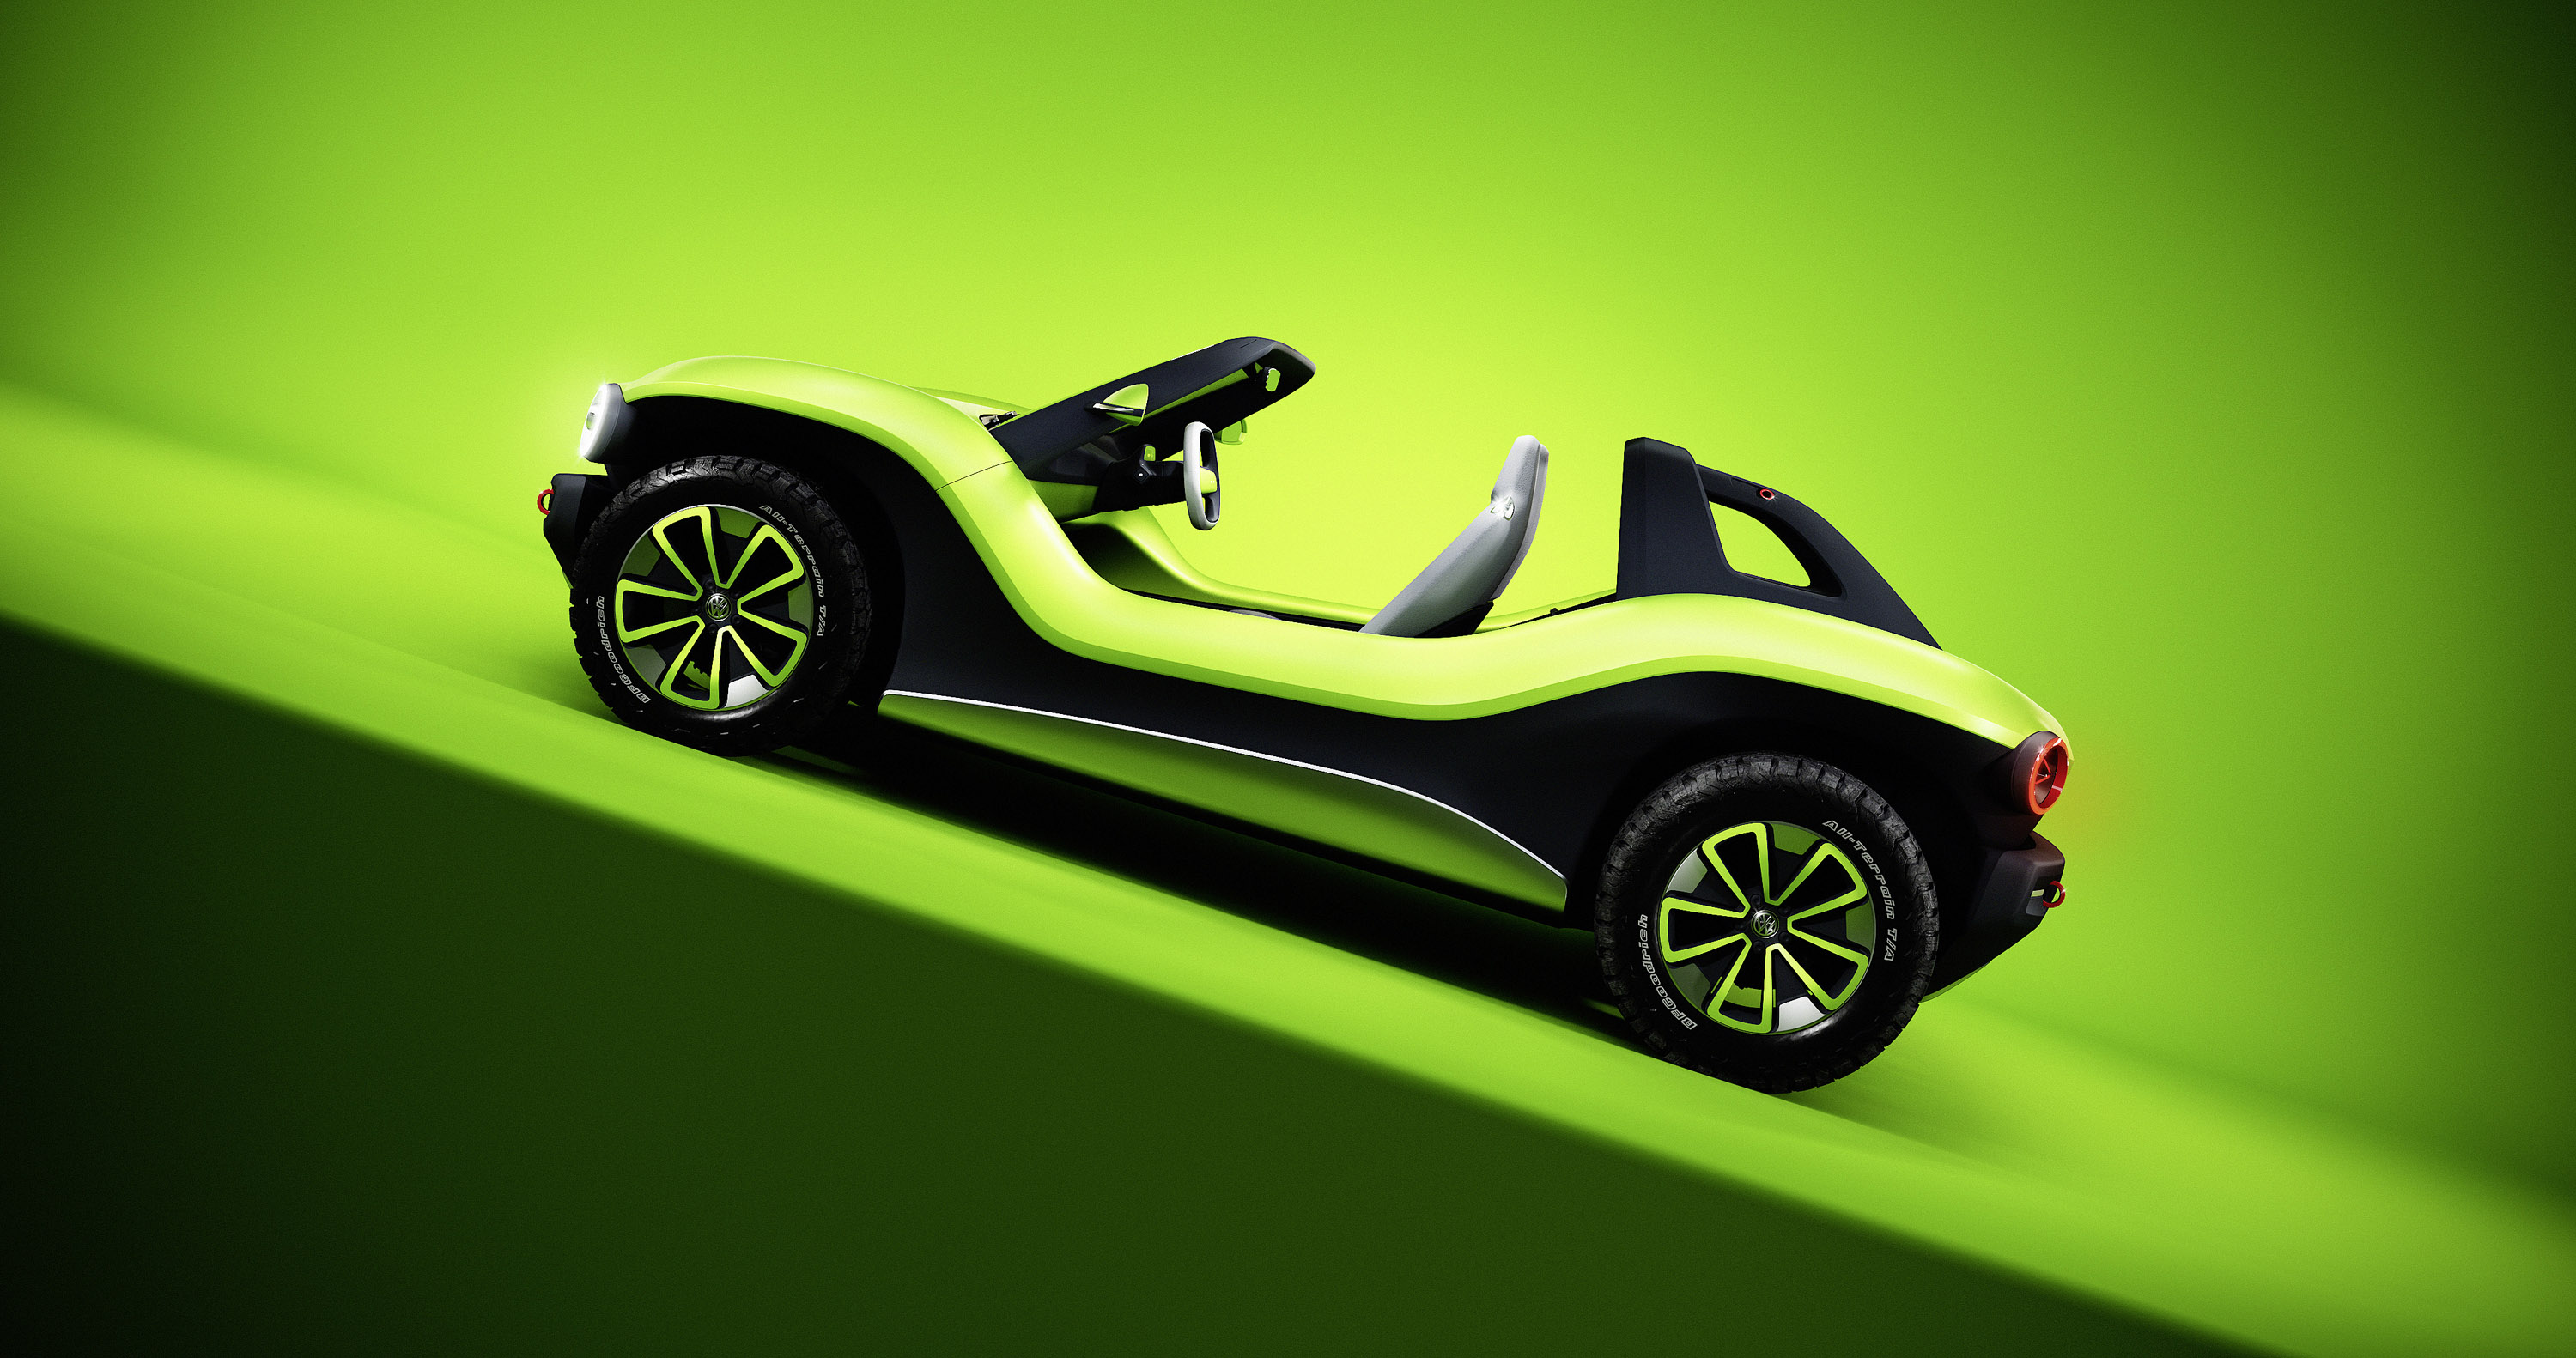 ID.BUGGY - это и футуристический, и ретро-автомобиль. Шасси MEB включает в себя литий-ионную батарею мощностью 62 кВт в полу и электродвигатель мощностью 201 л.с. в задней части, что добавляет неплохой пробег в 250 км в цикле WLTP. Автомобиль также о